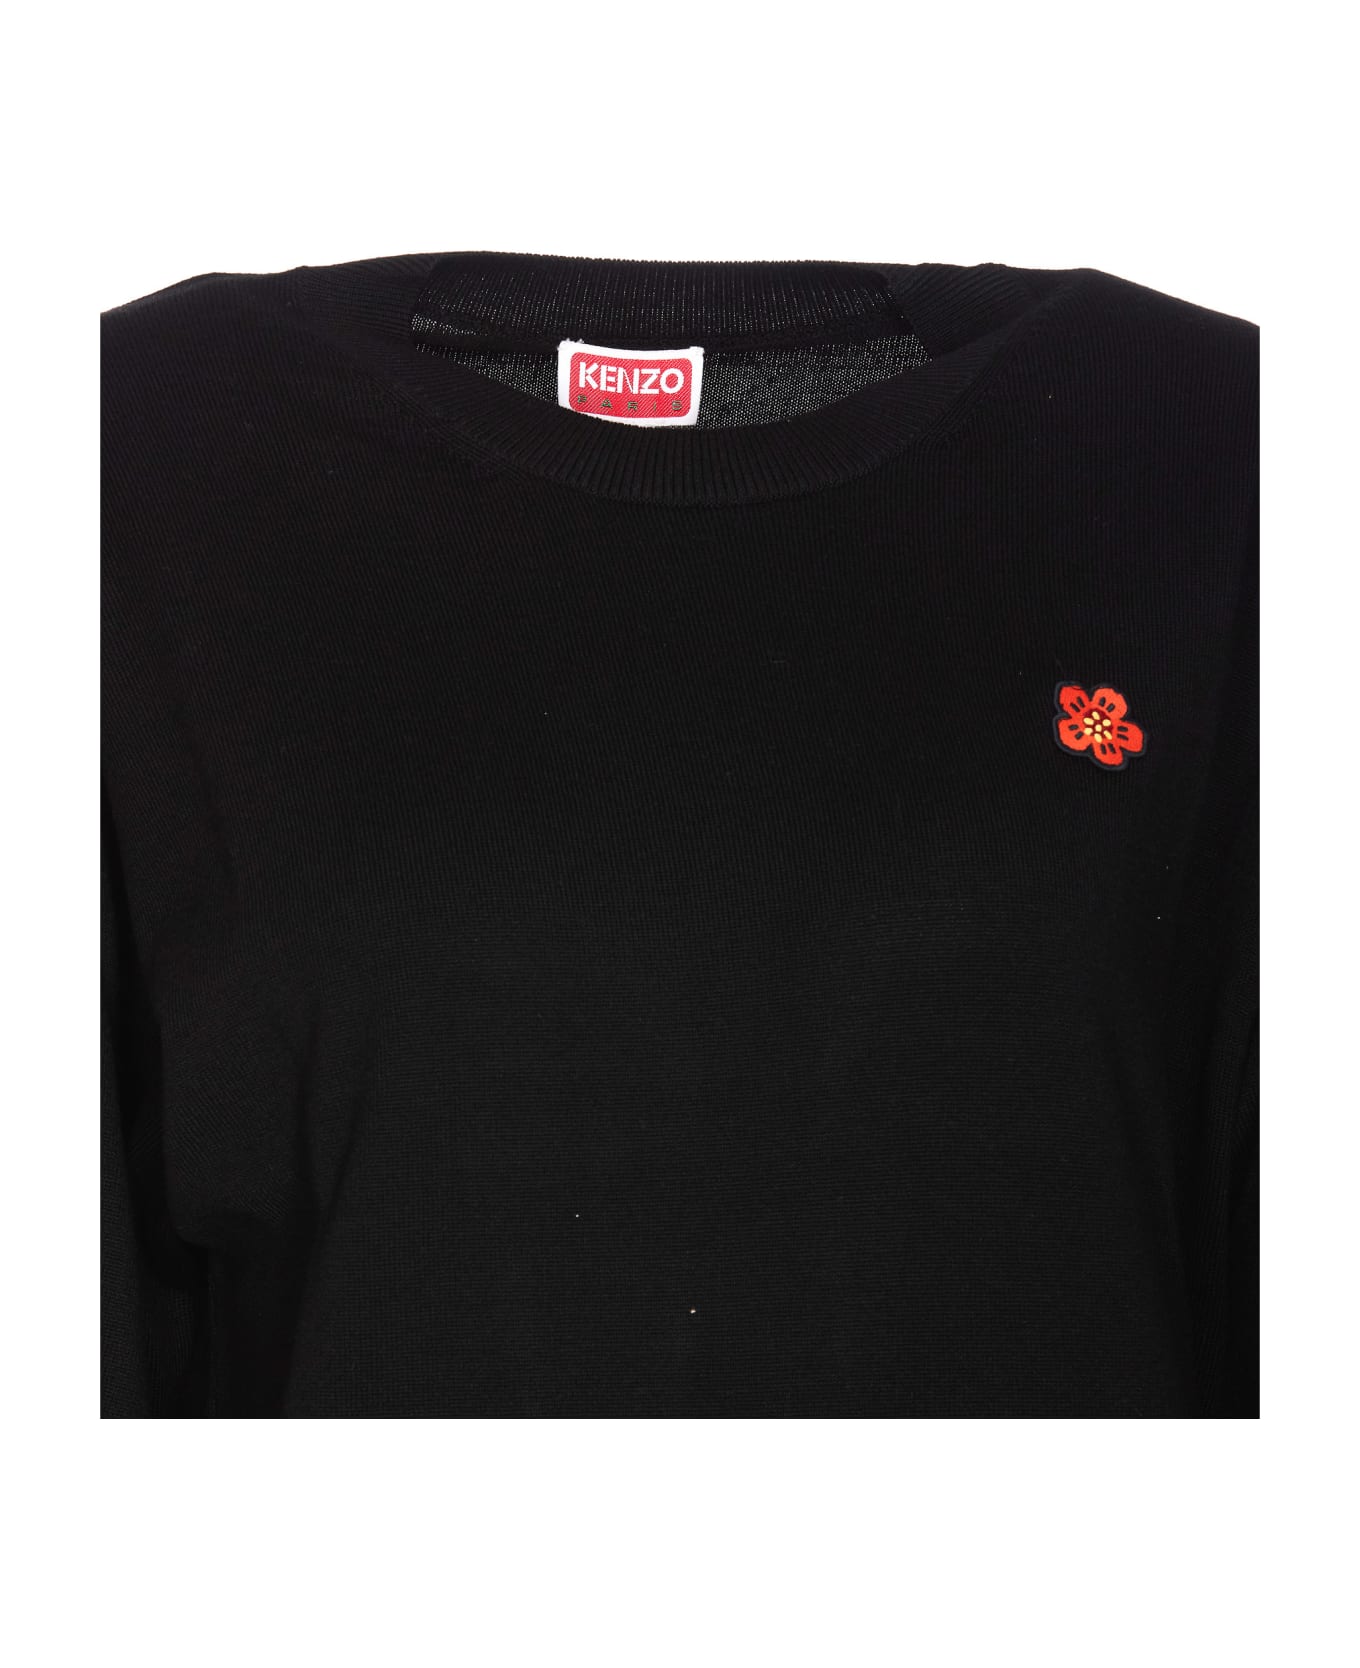 Kenzo Boke Crest Sweater - Black